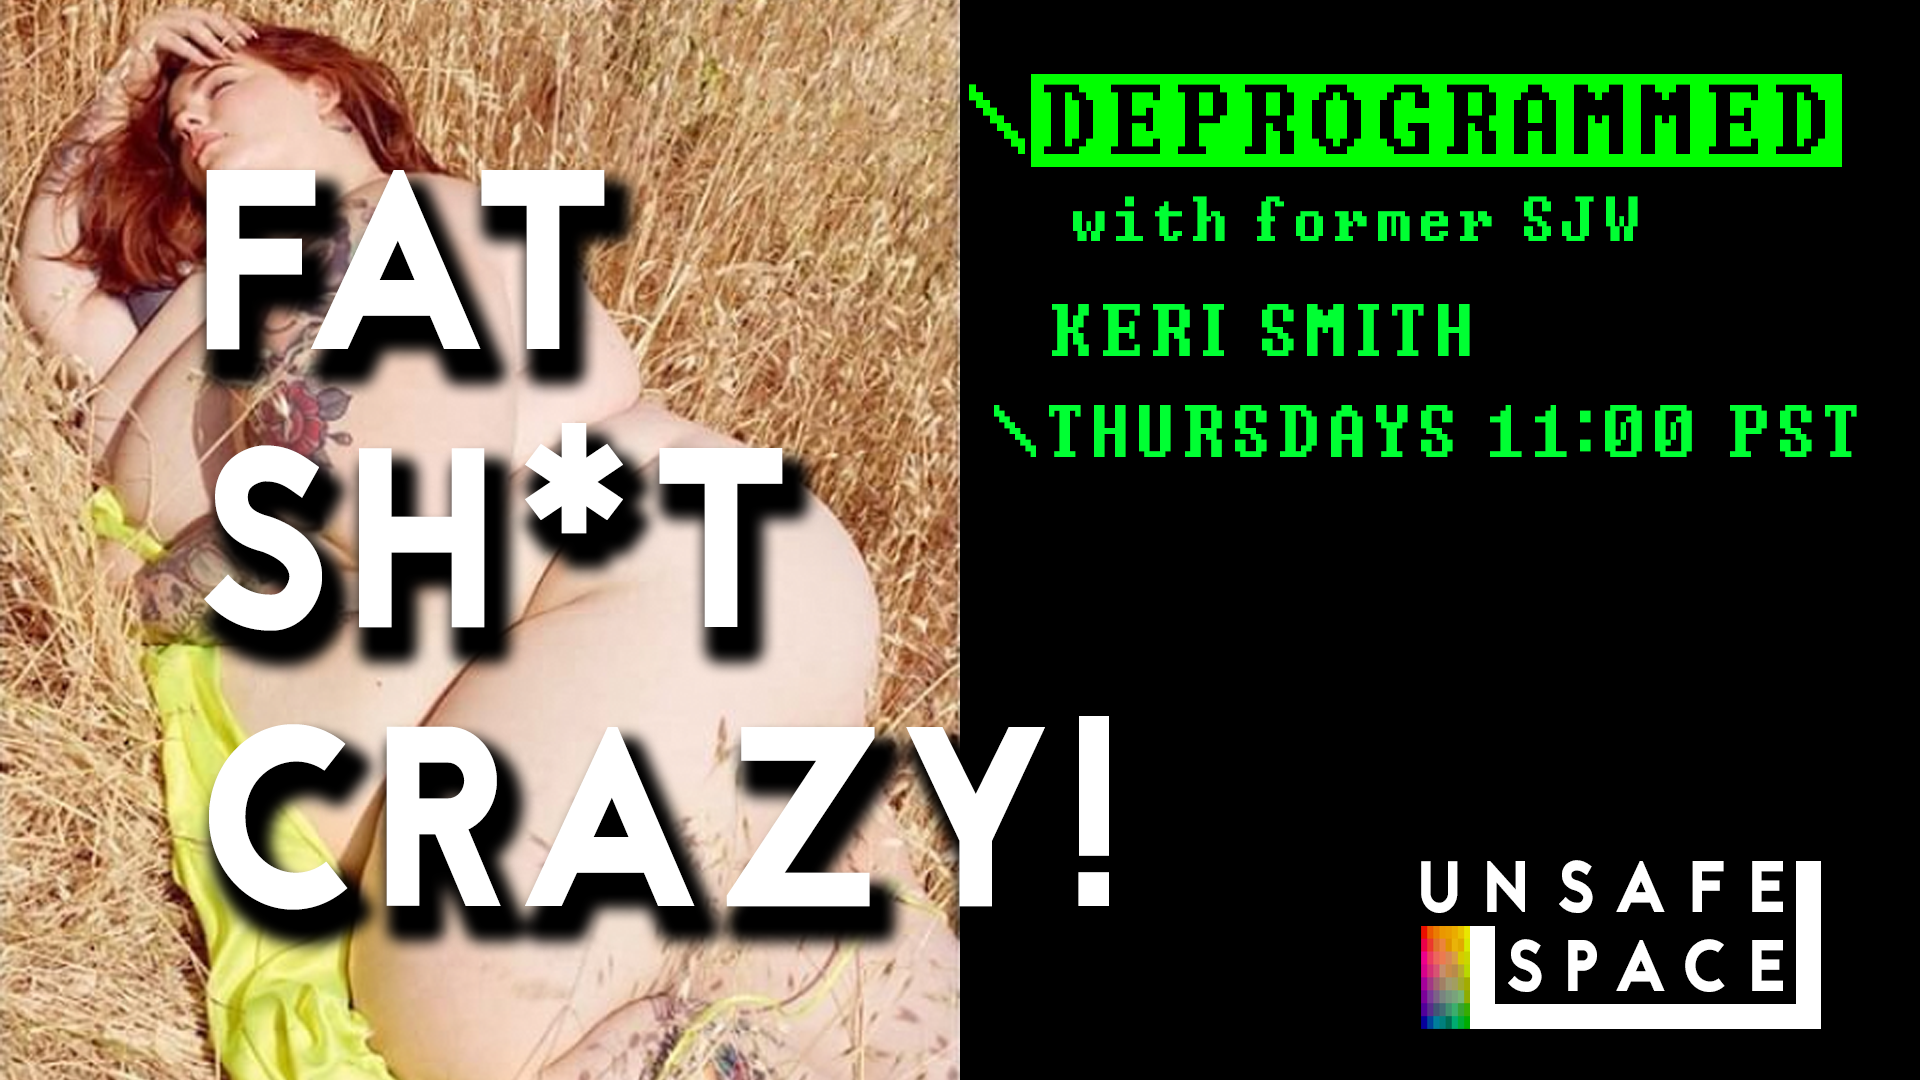 [Live: Episode 040] Deprogrammed: Fat Sh*t Crazy!